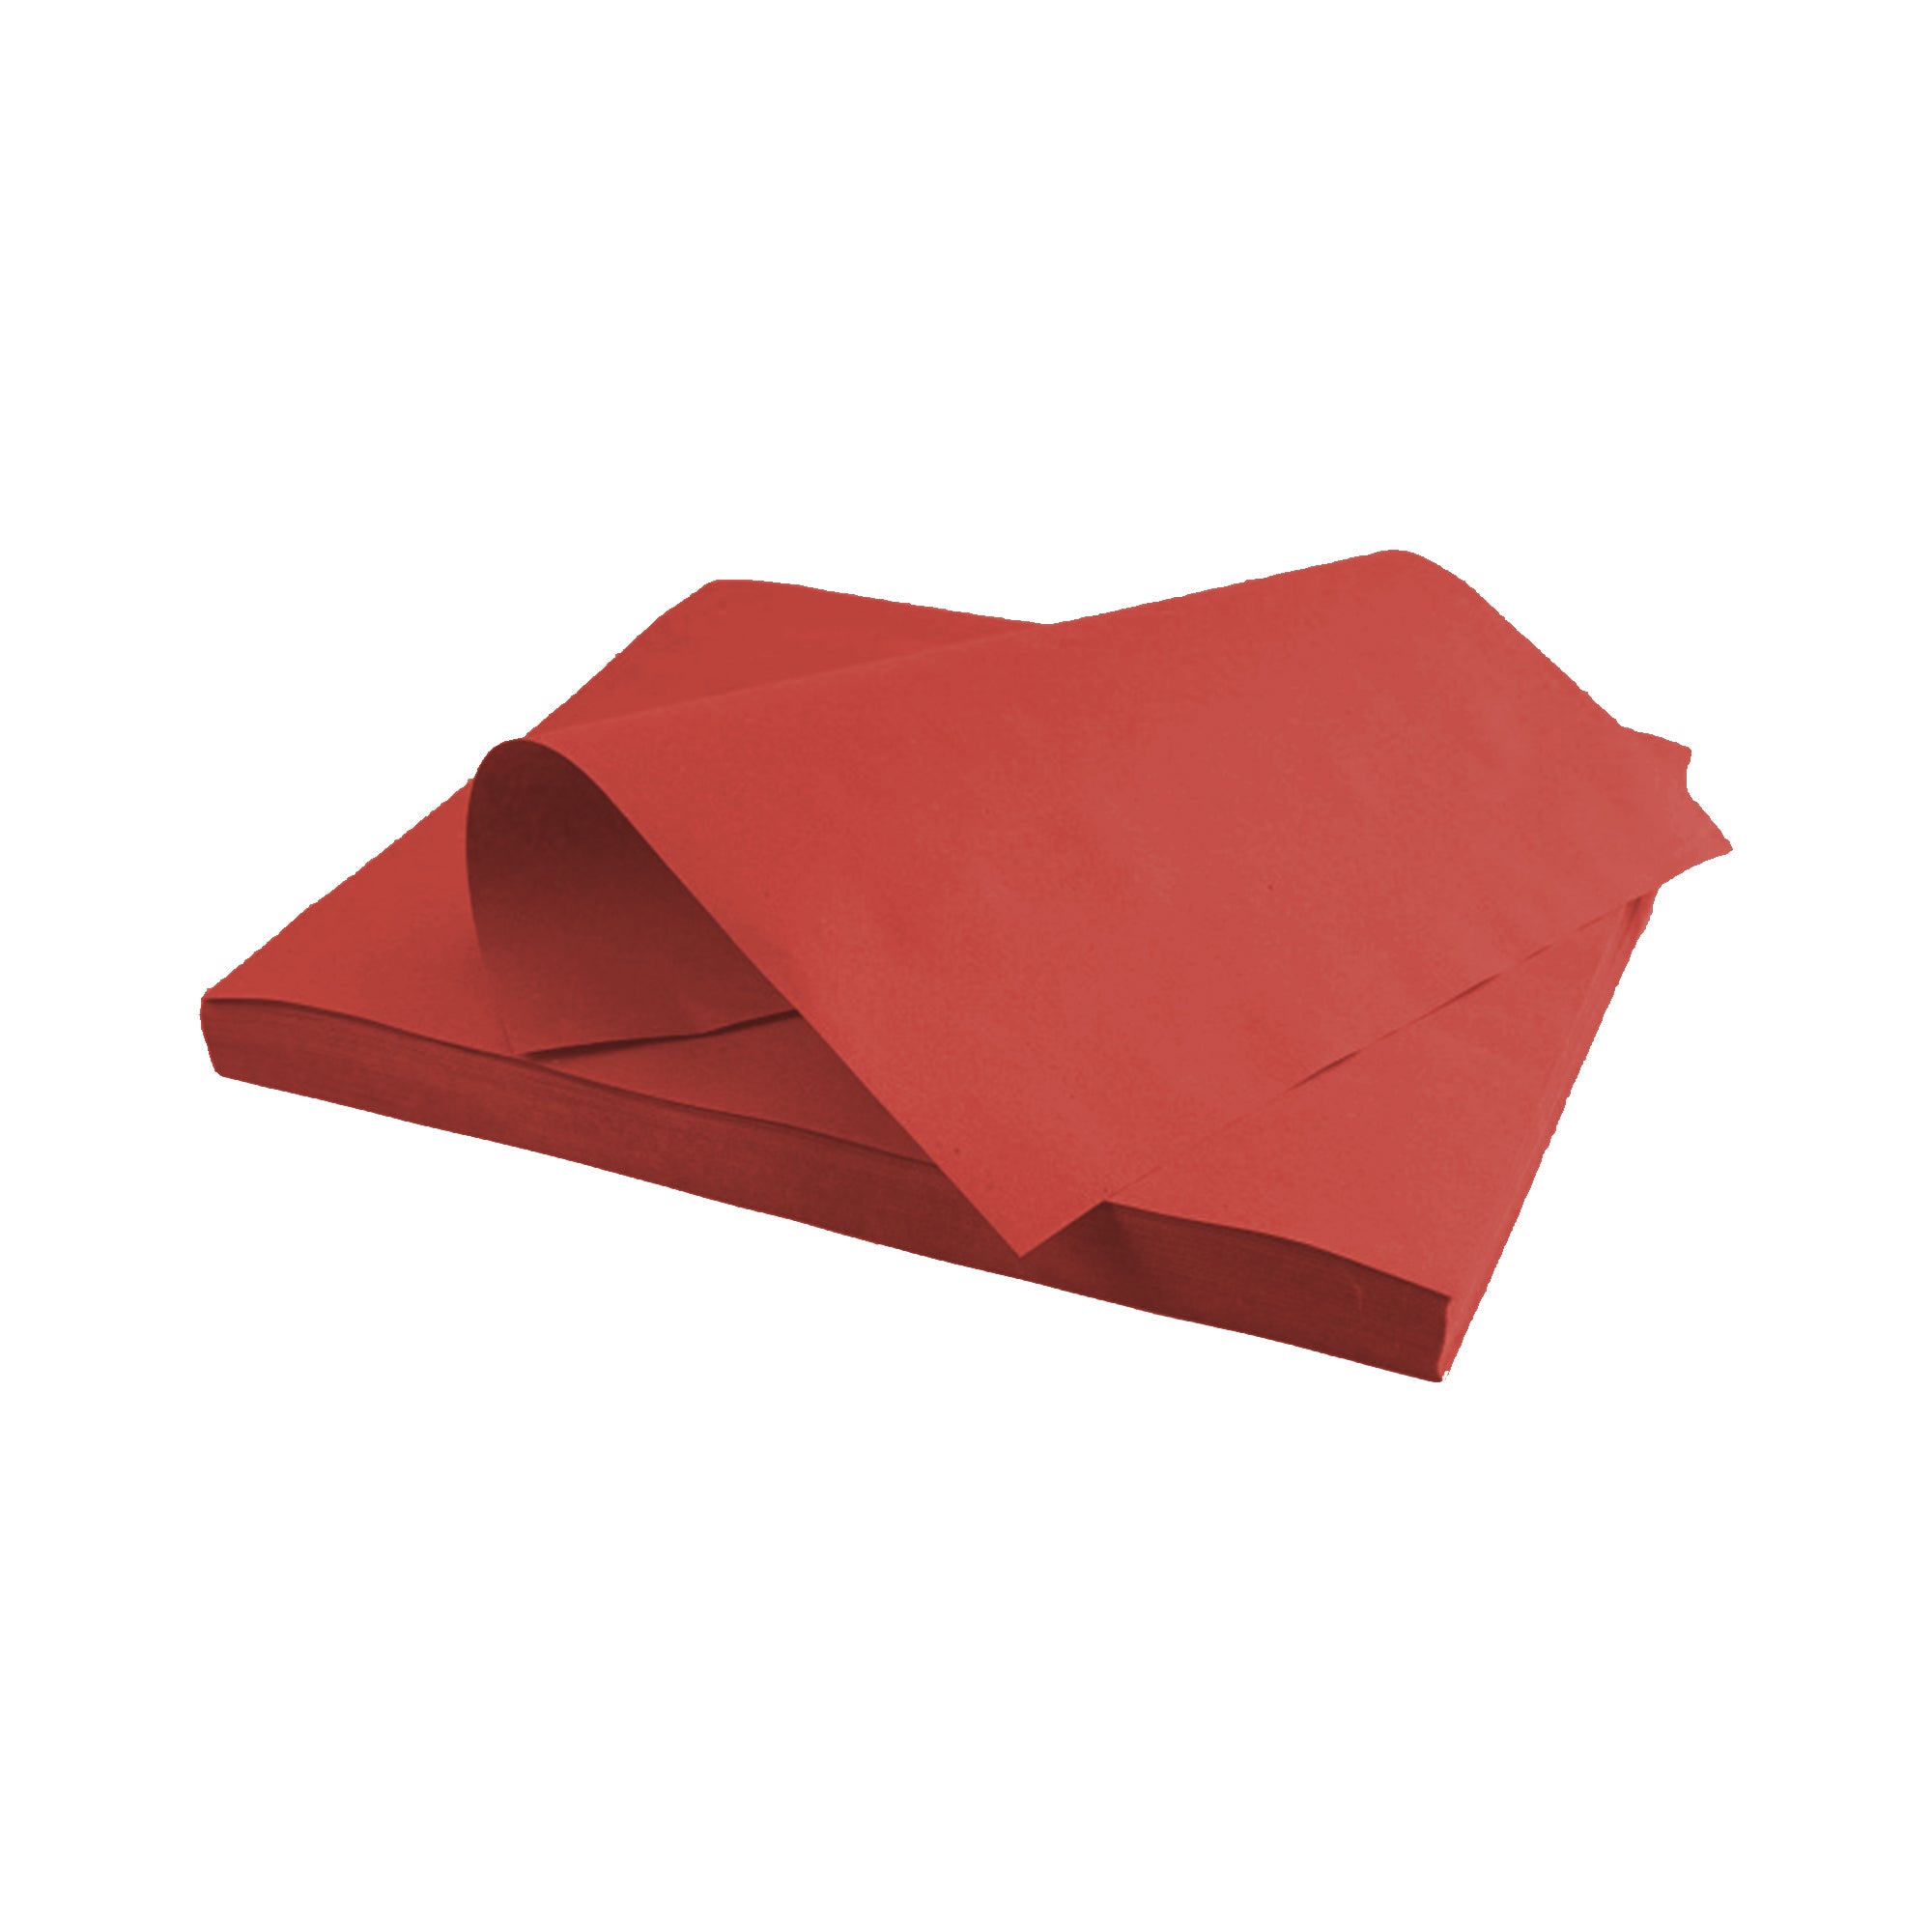 250 pz Tovagliette carta paglia colore rosso € 29,56 + Iva